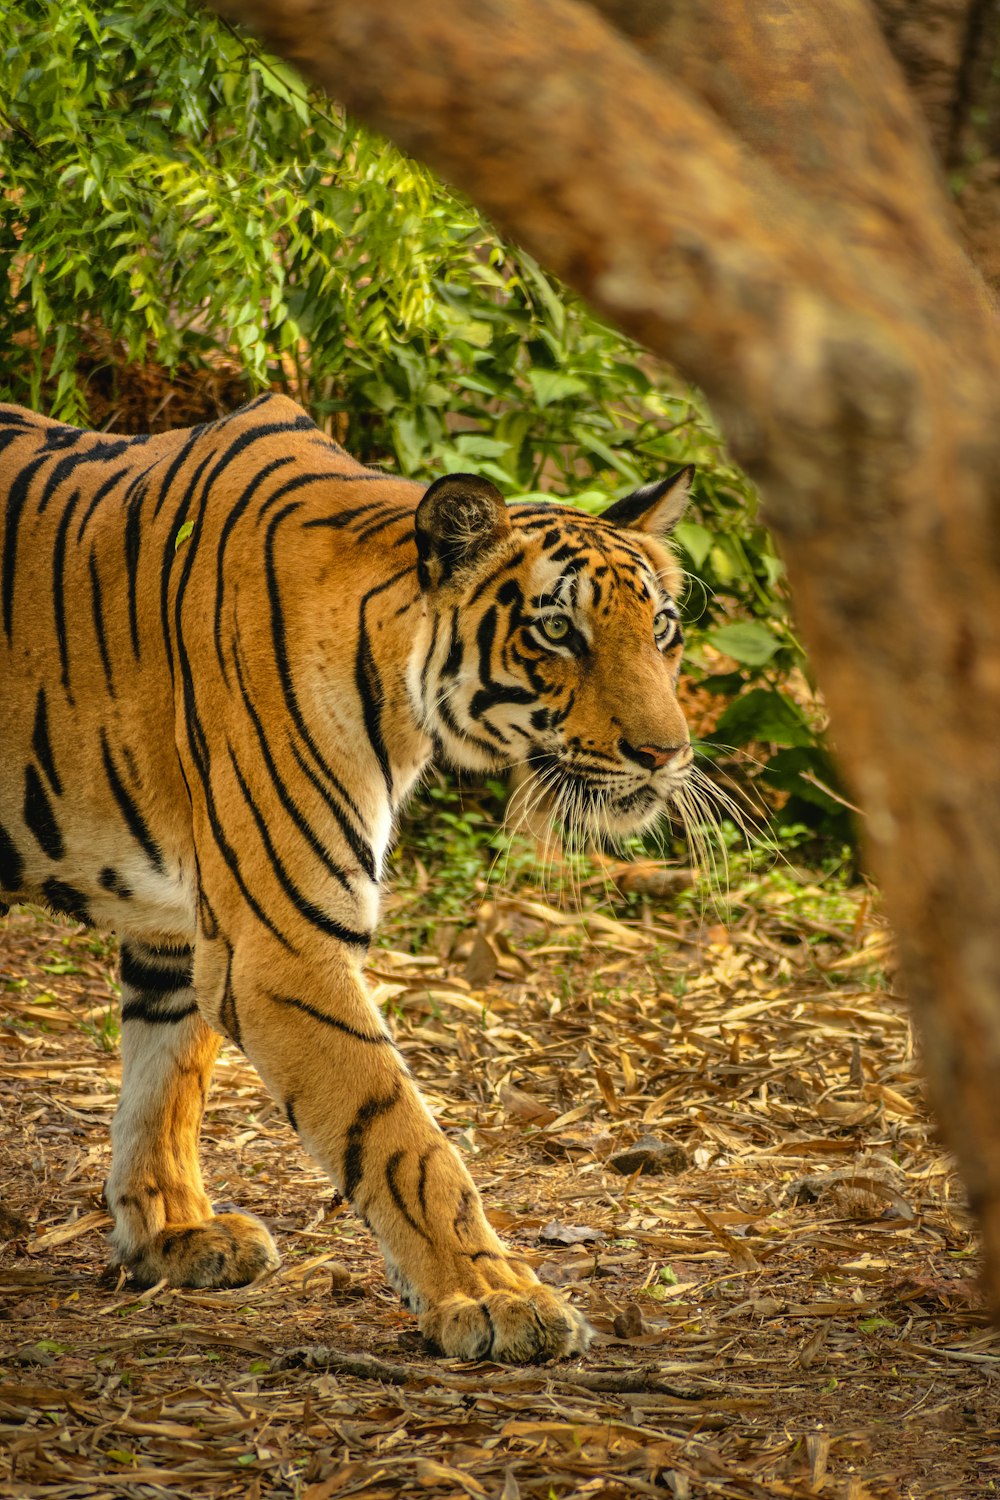 tiger walking on brown grass during daytime